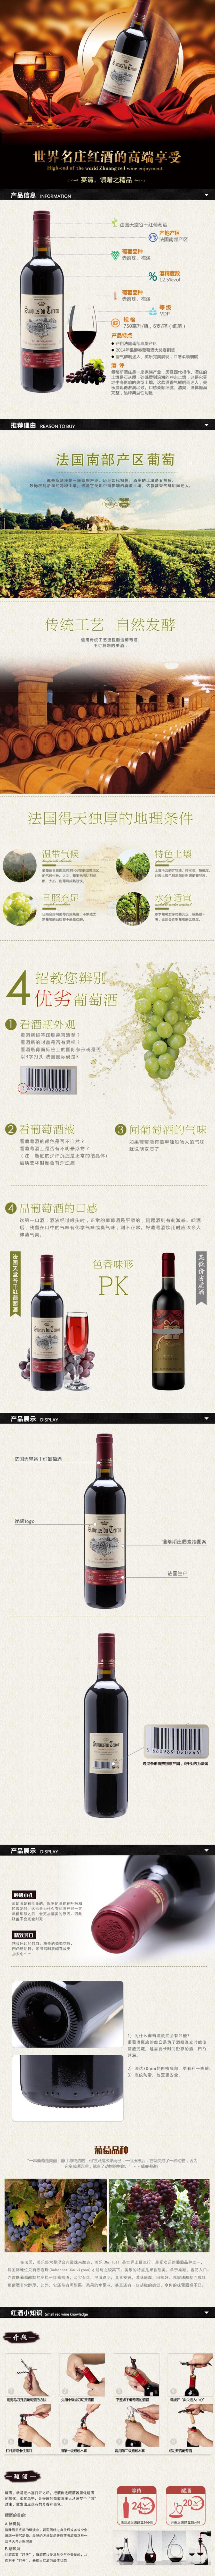 世界名庄红酒的高端享受酒电商详情页